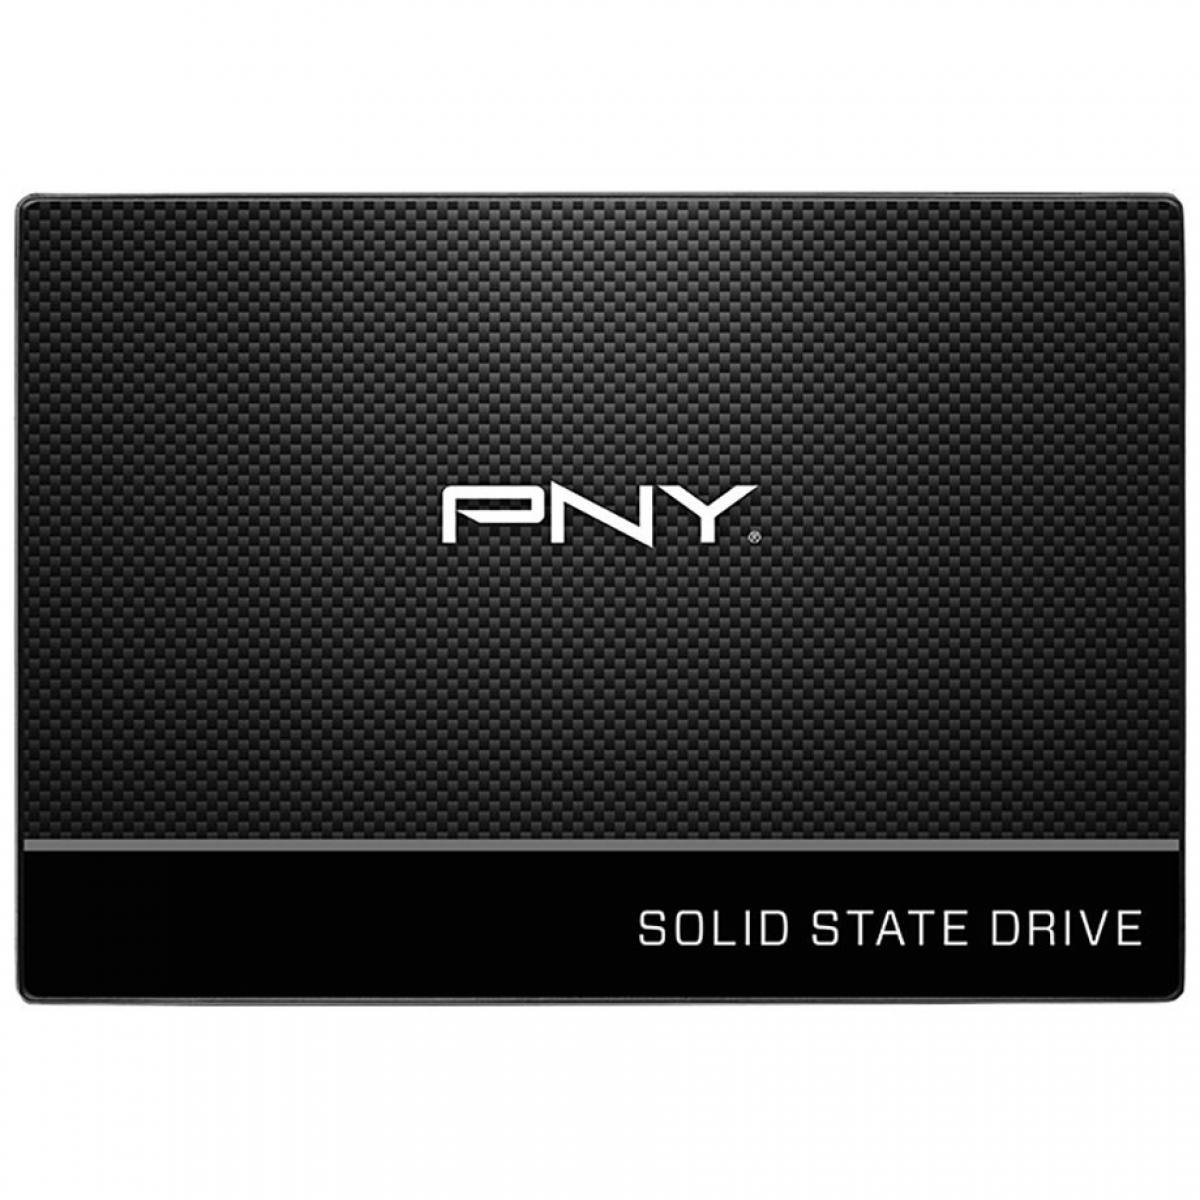 SSD PNY CS900 2.5inch 120GB TLC 